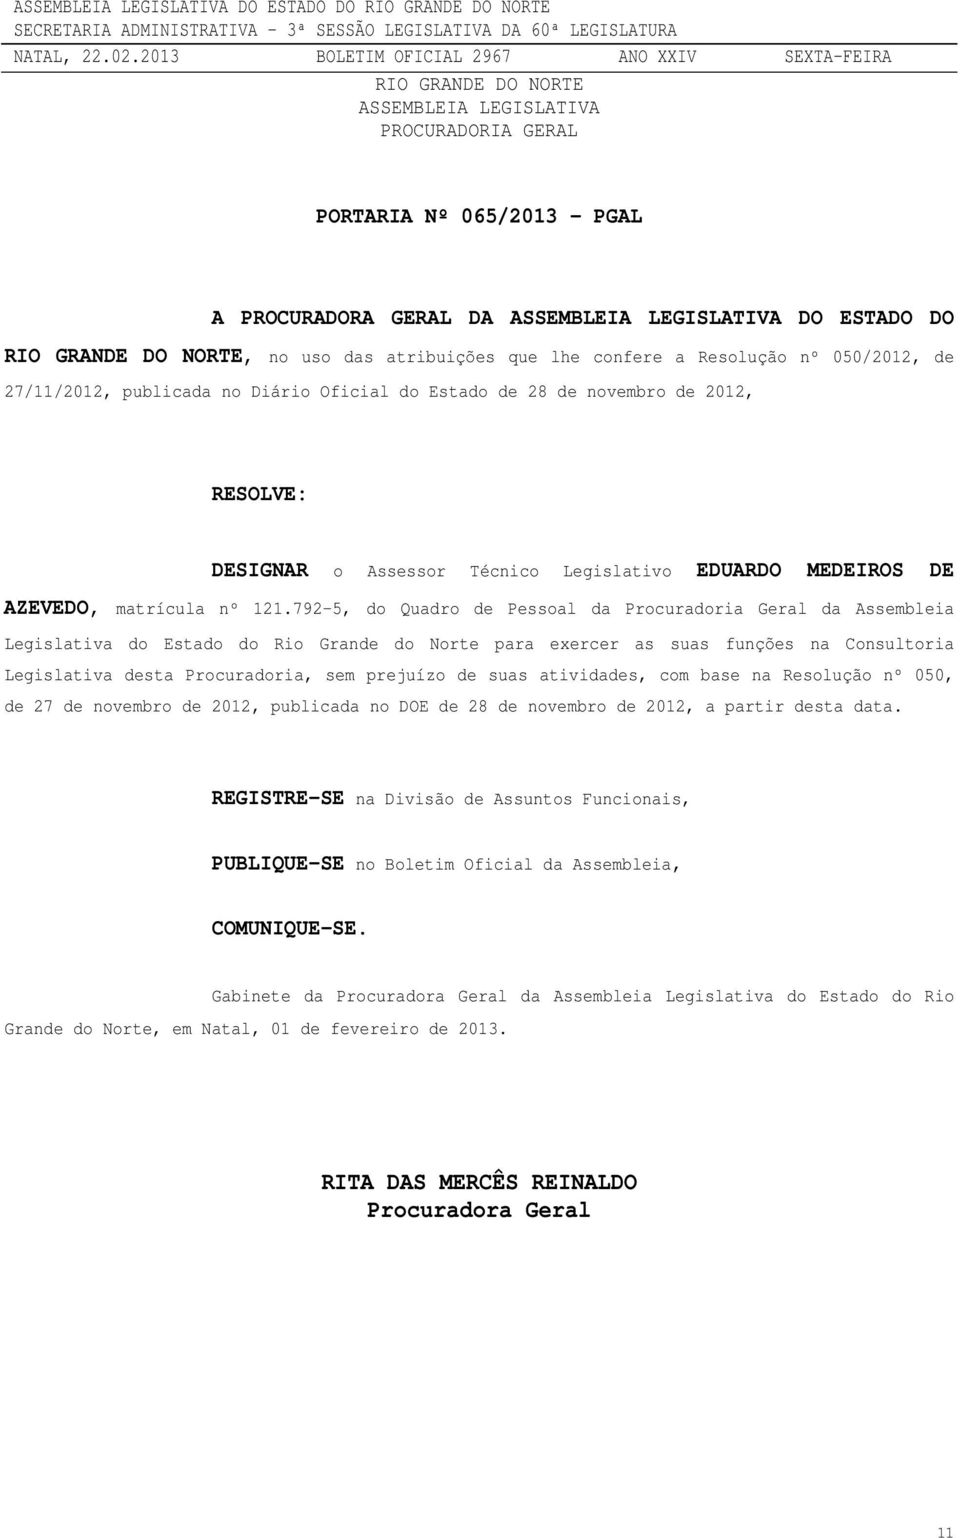 792-5, do Quadro de Pessoal da Procuradoria Geral da Assembleia Legislativa do Estado do Rio Grande do Norte para exercer as suas funções